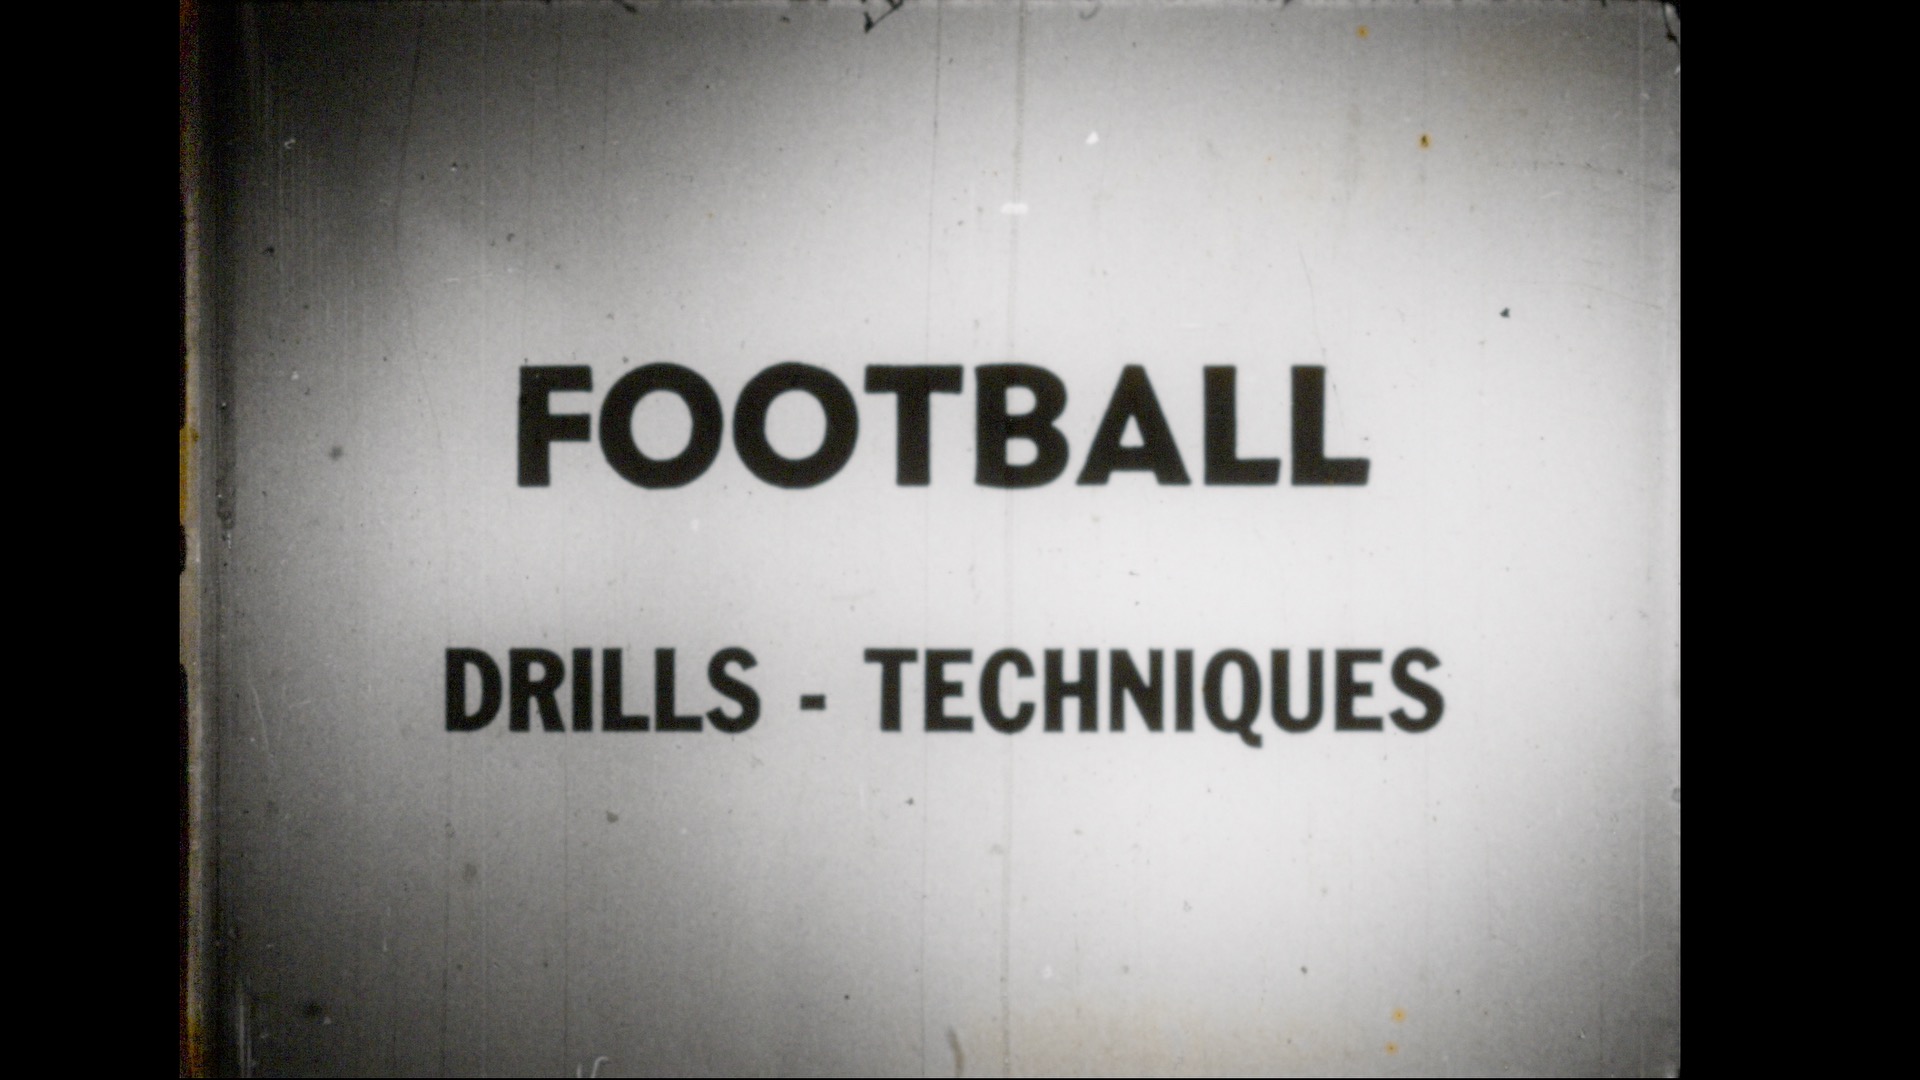 Football Drills & Techniques, circa 1954